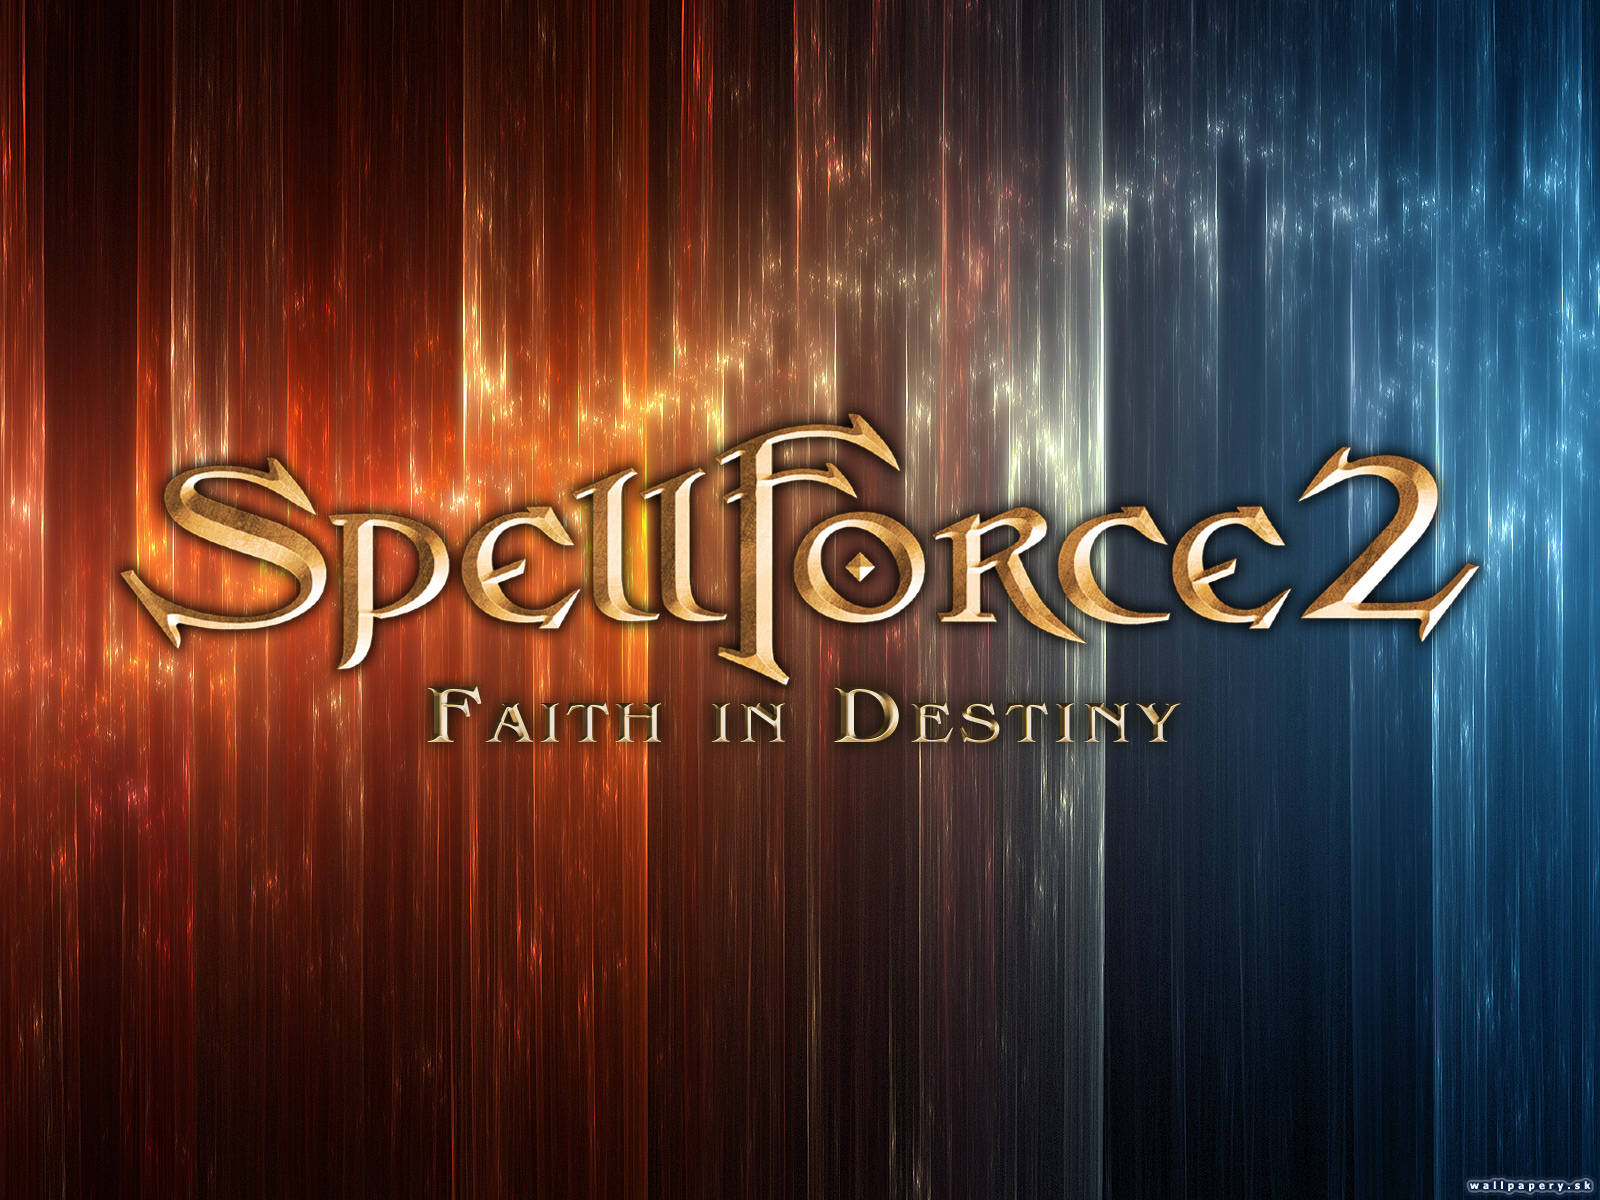 SpellForce 2: Faith in Destiny - wallpaper 2